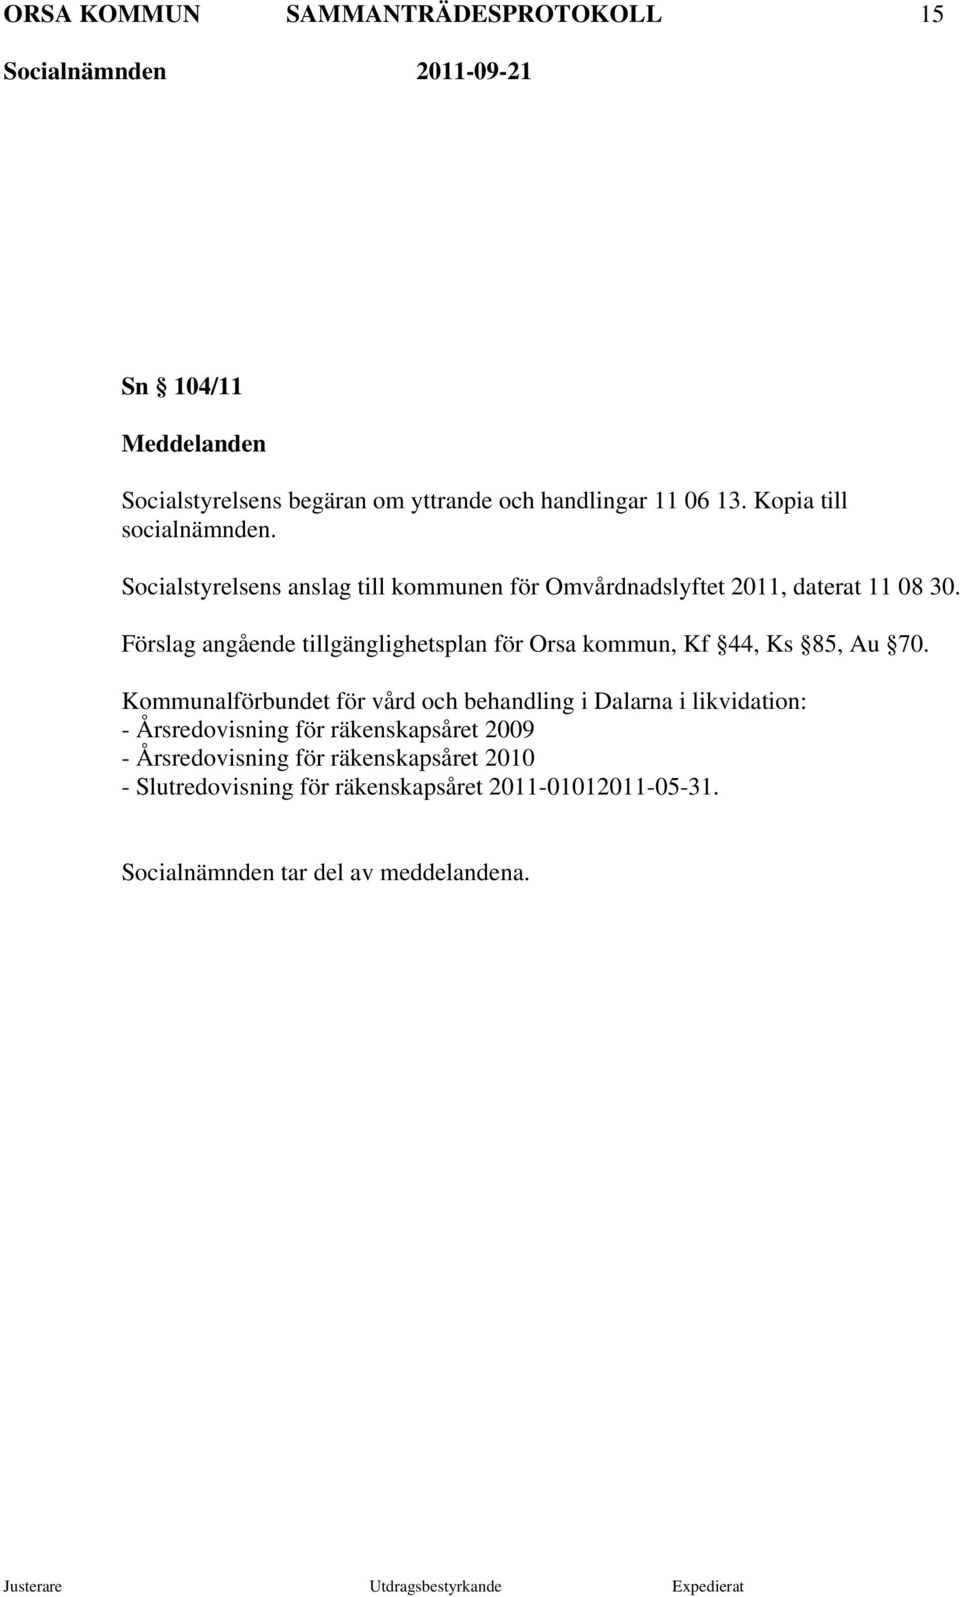 Förslag angående tillgänglighetsplan för Orsa kommun, Kf 44, Ks 85, Au 70.